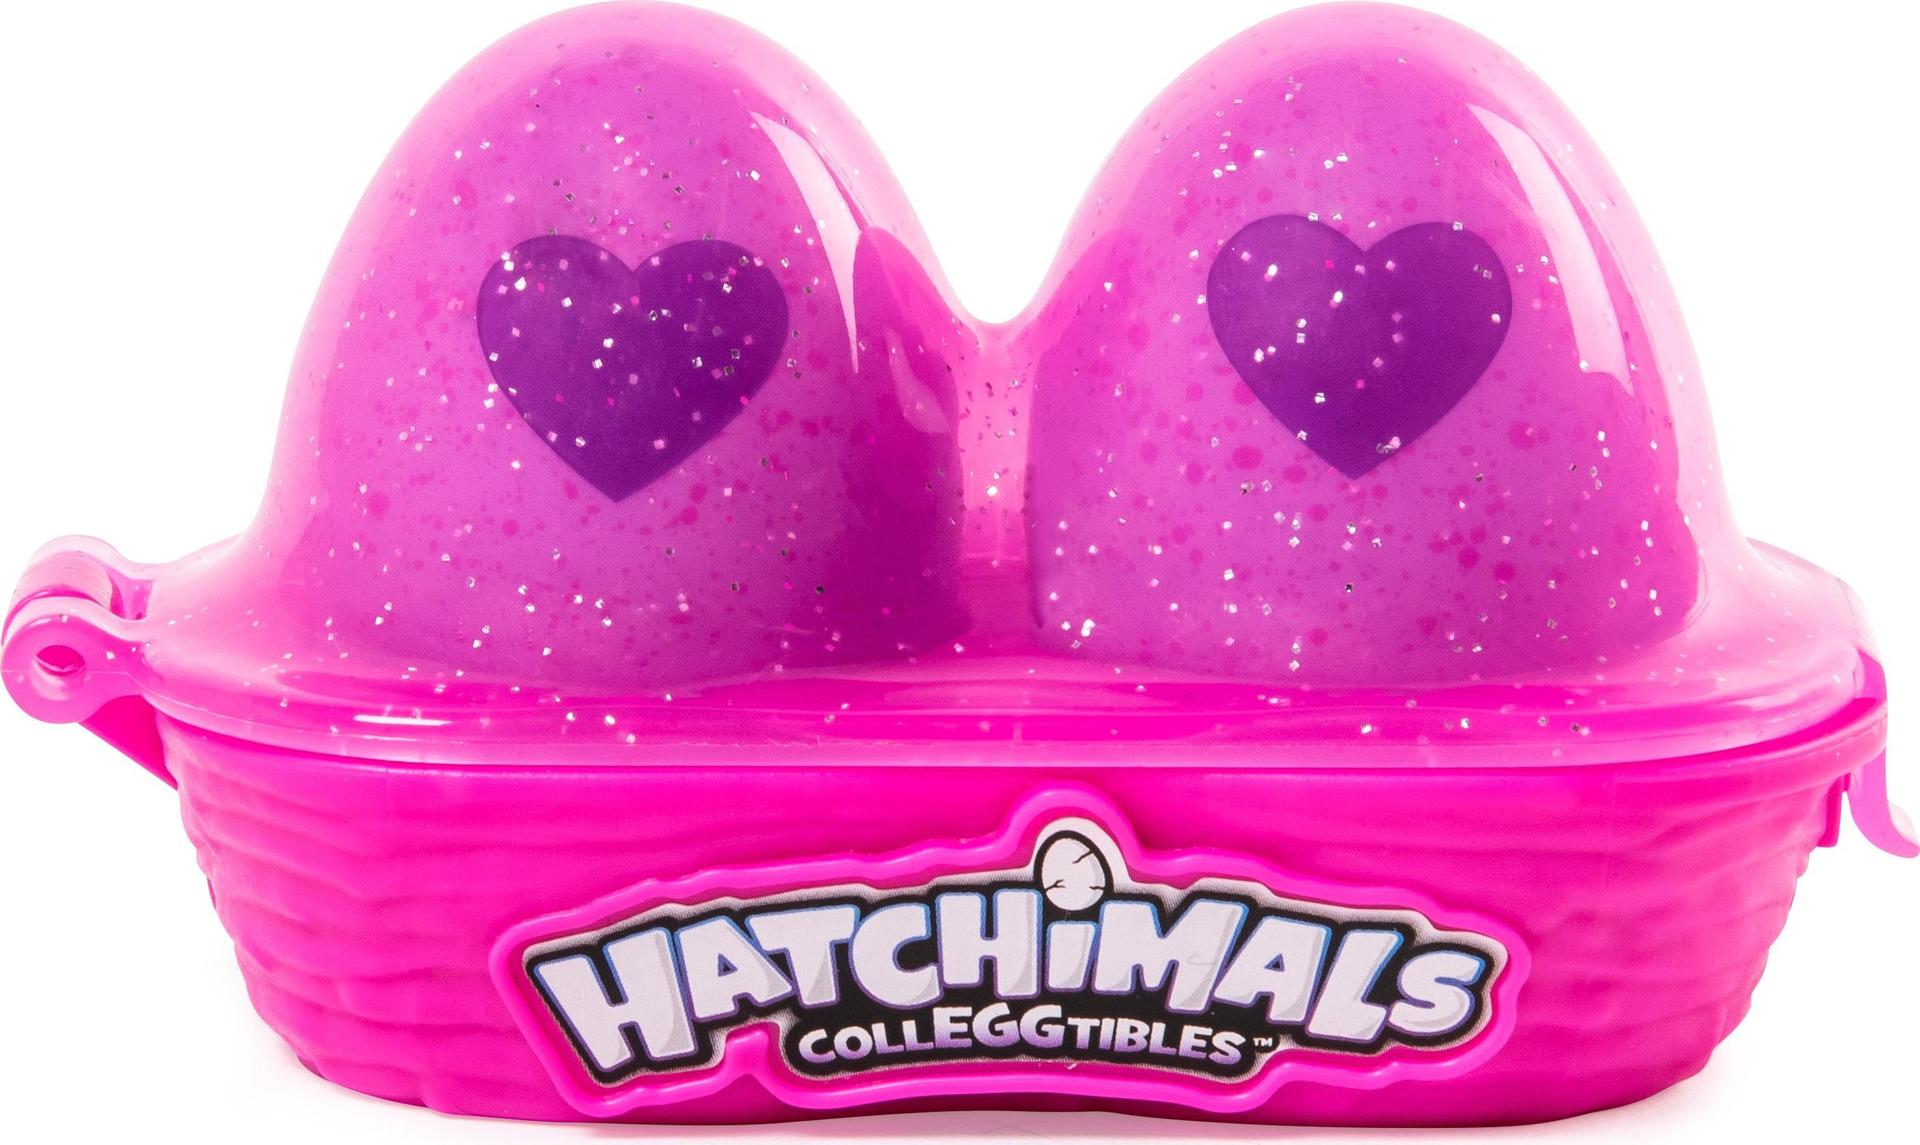 Hatchimals CollEGGtibles Egg Carton 2 Pack Interaktives Spielzeug (6038298)